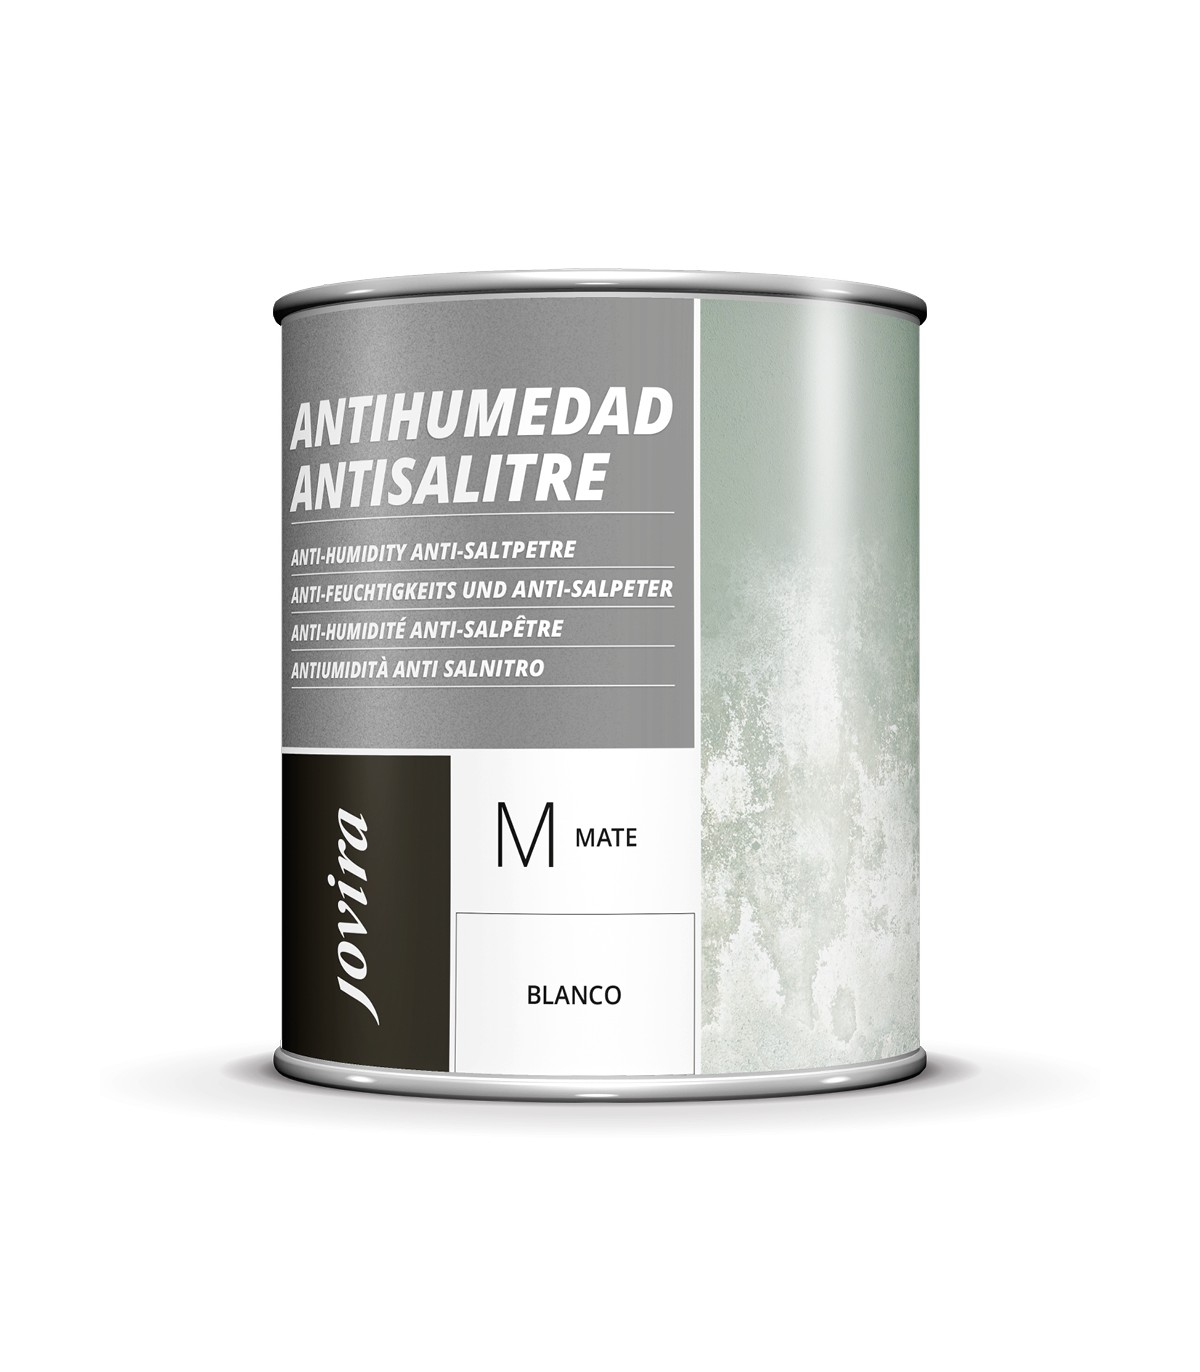 Pintura Anticondensación - Antihumedad - Antimoho En Color Blanco.  Capacidad: 0.750